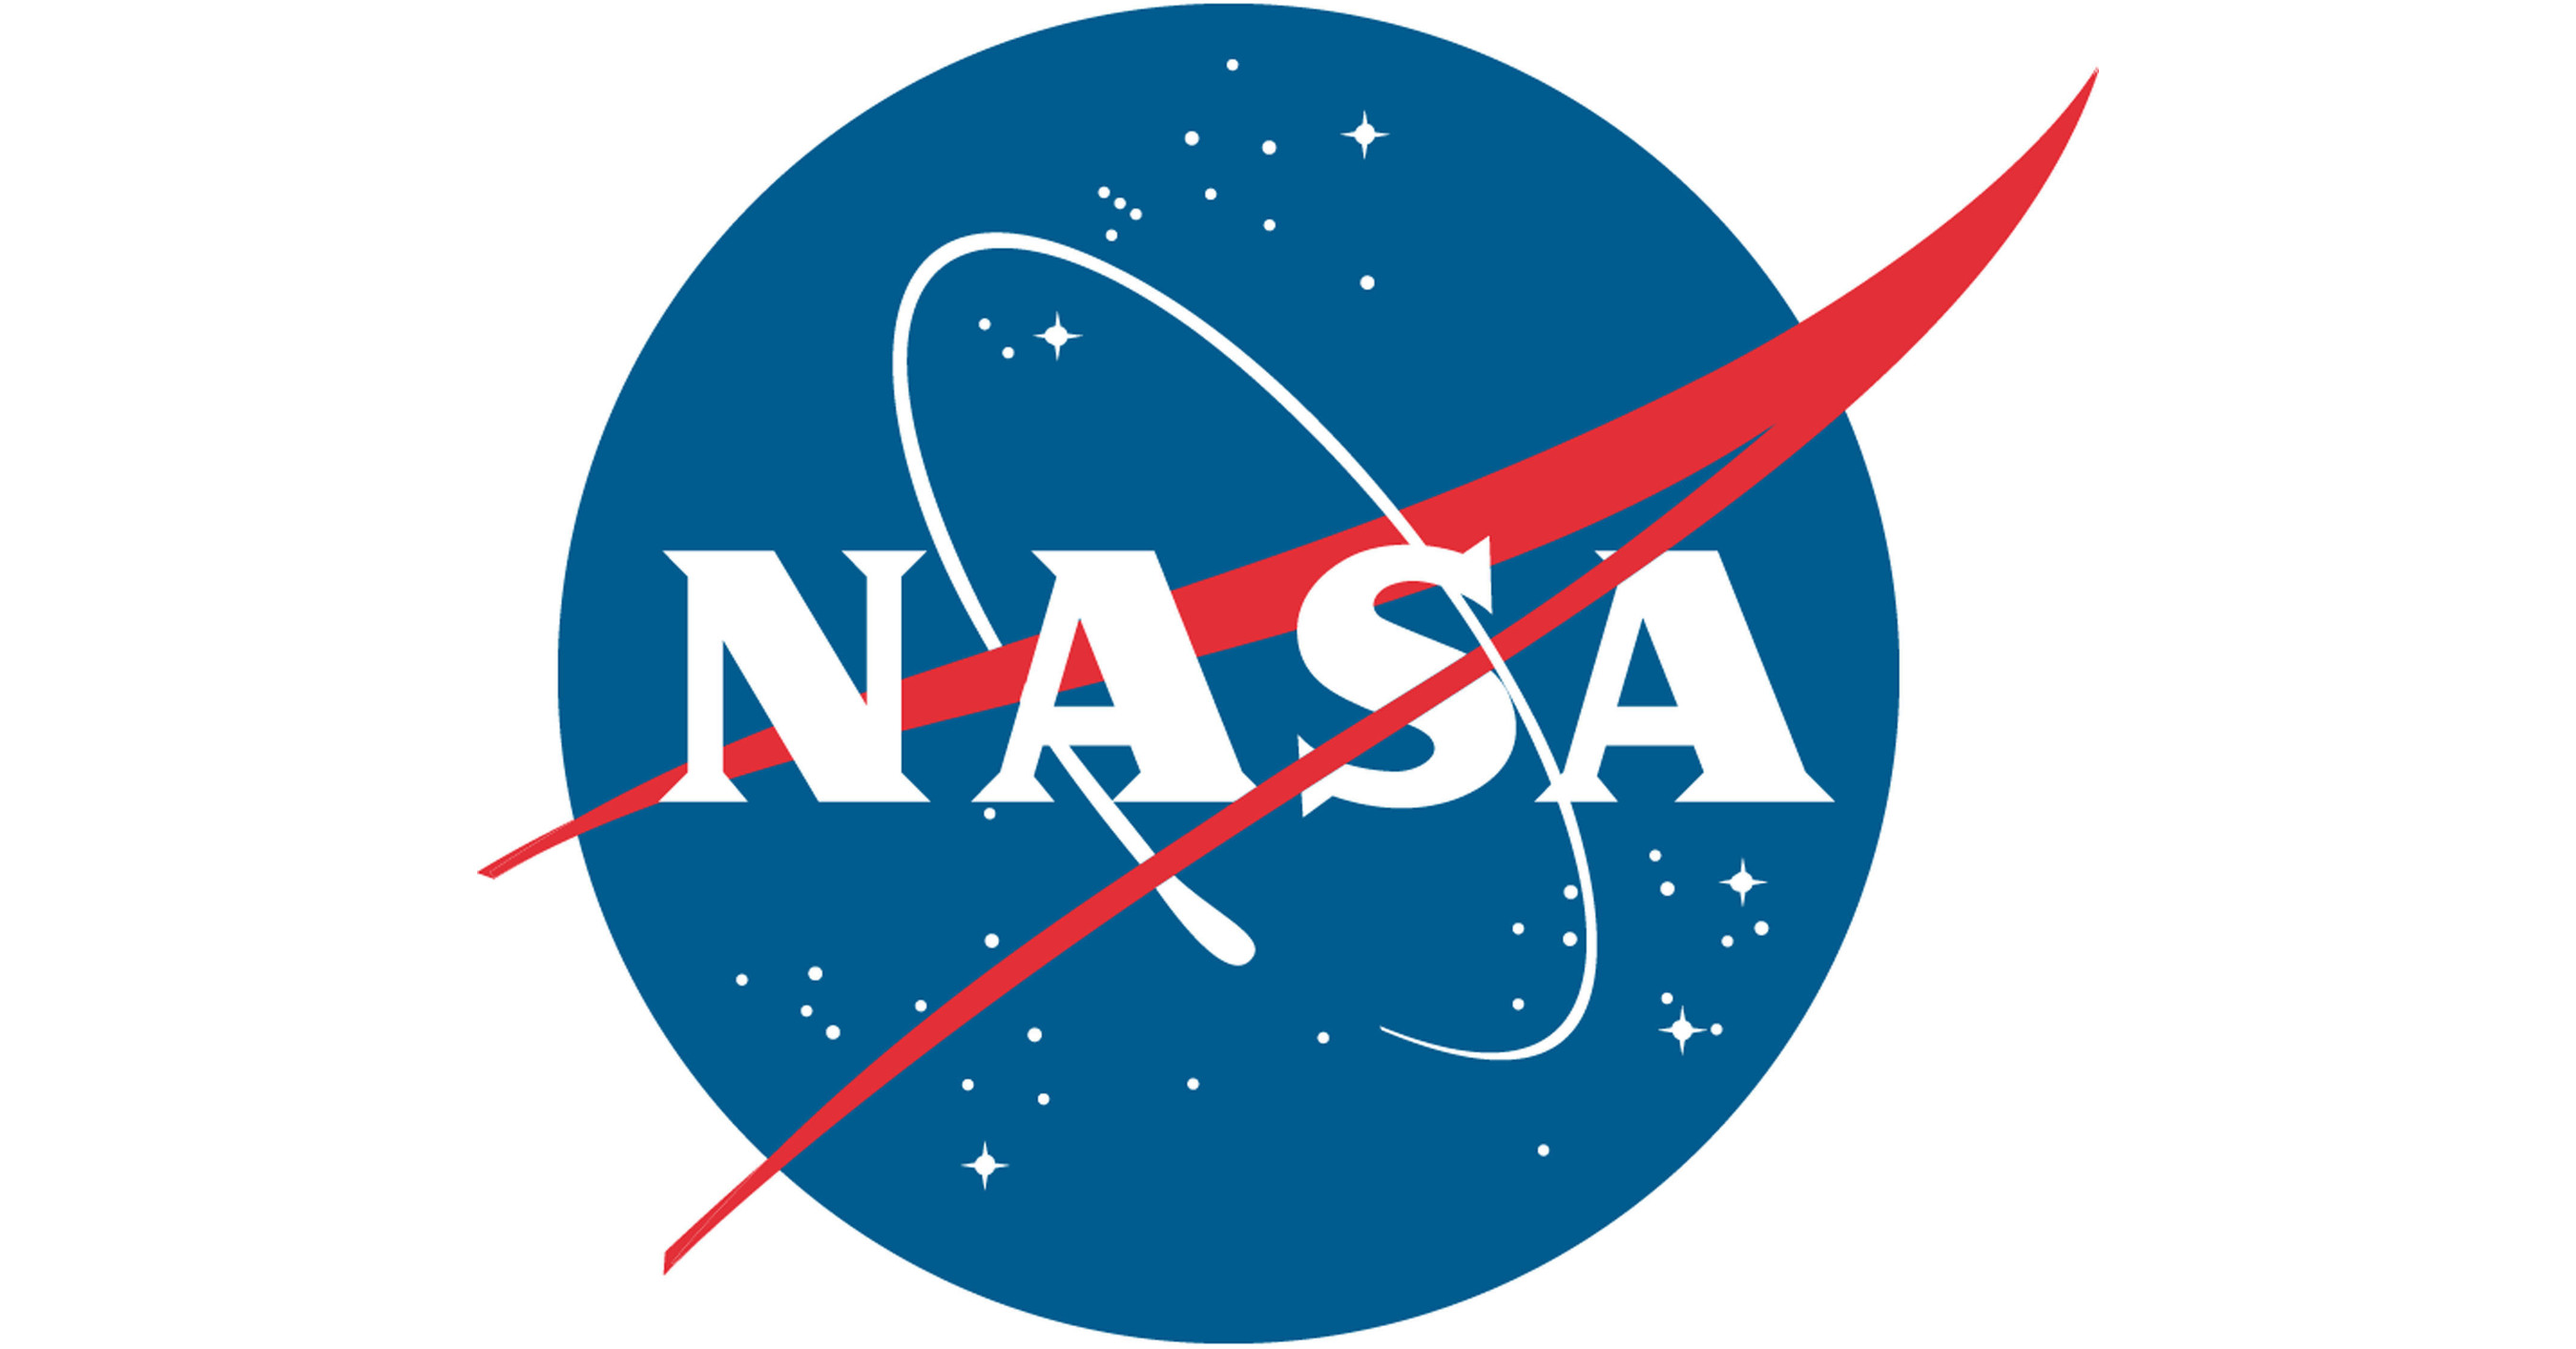 La NASA met en lumière la recherche sur le climat lors du lancement de l’expédition et diffuse une couverture télévisée